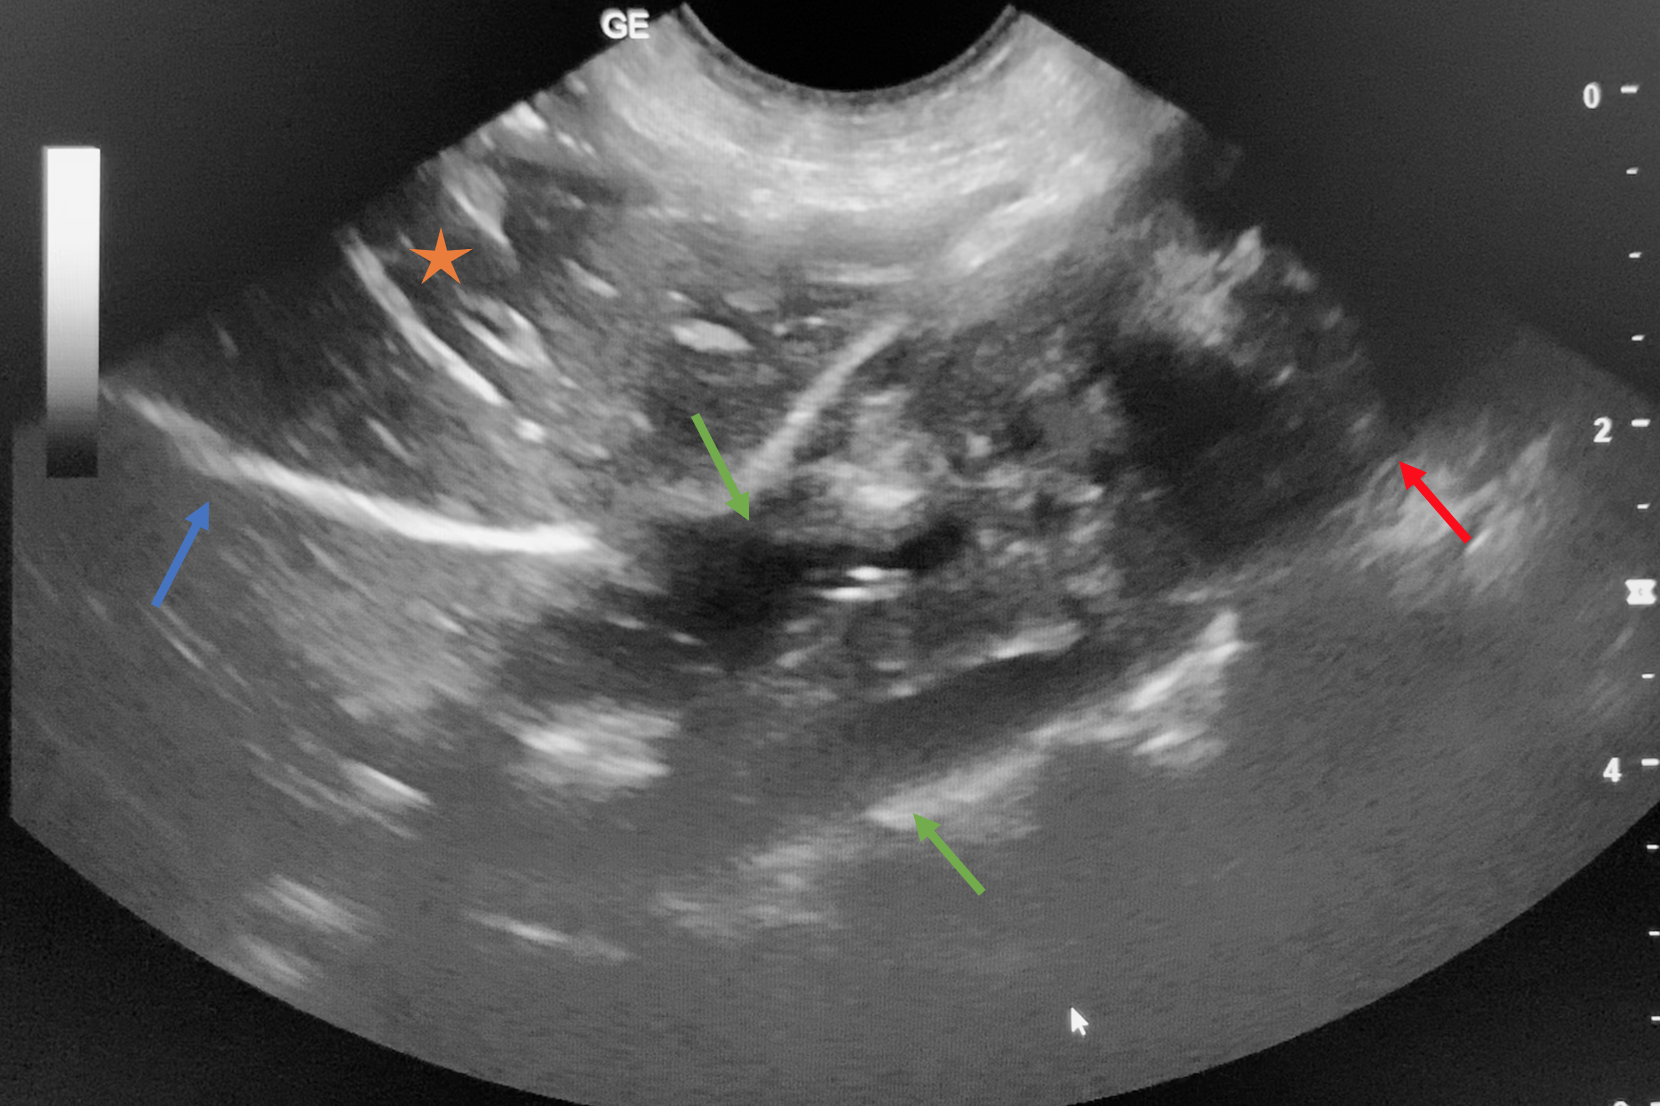 Echographie de l'oesophage et du cardia (flèche bleue : diaphragme, étoile : foie, flèches vertes : œsophage, flèche rouge : région du cardia).